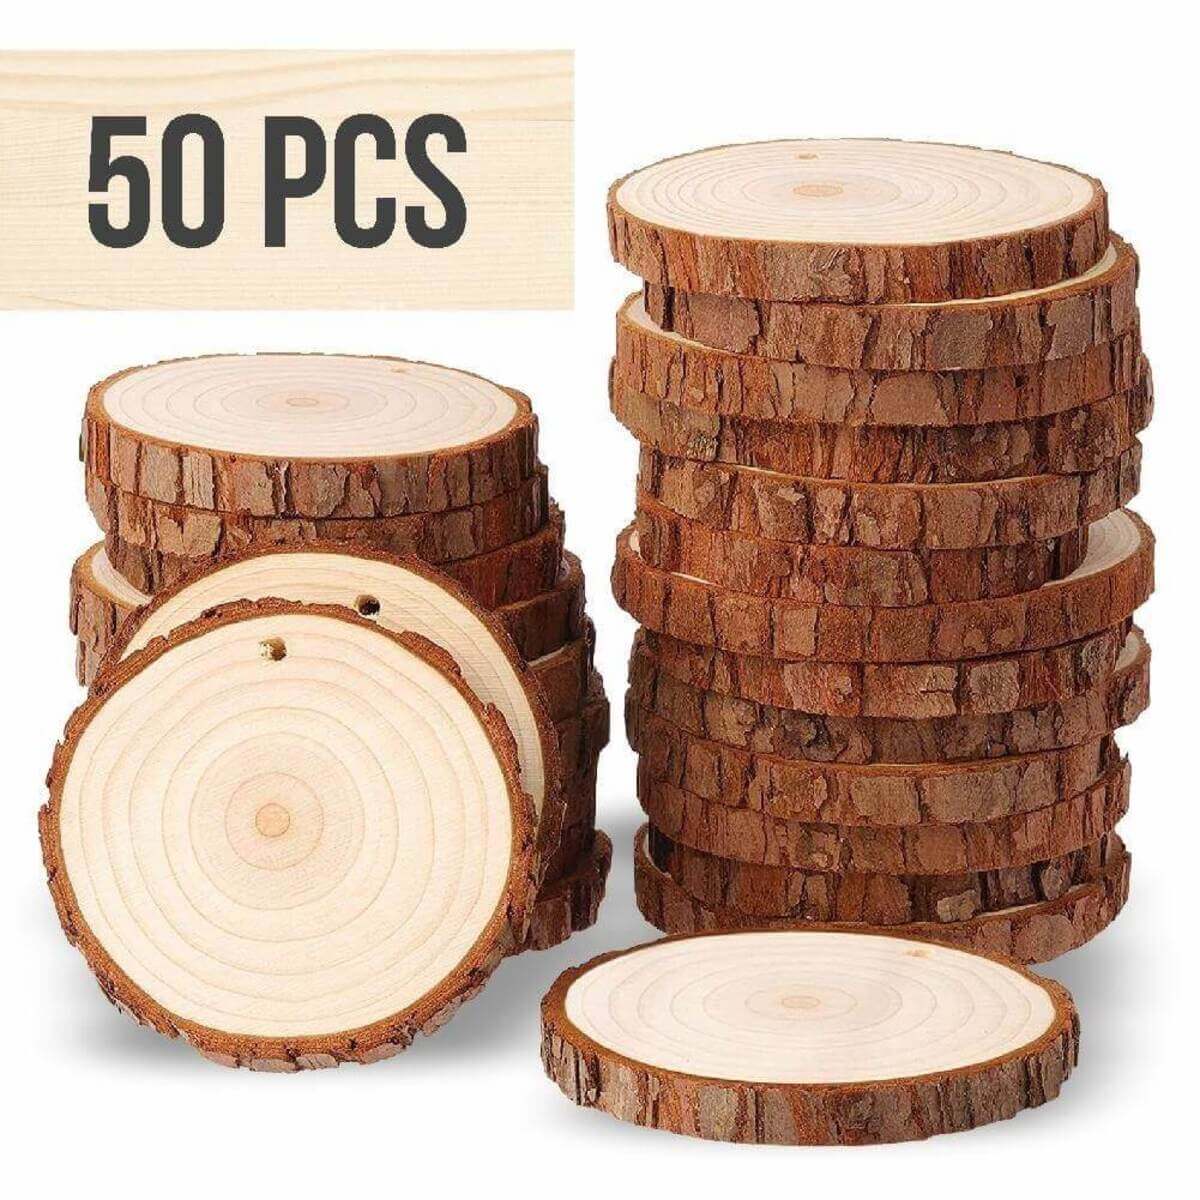 50 pcs wood slices